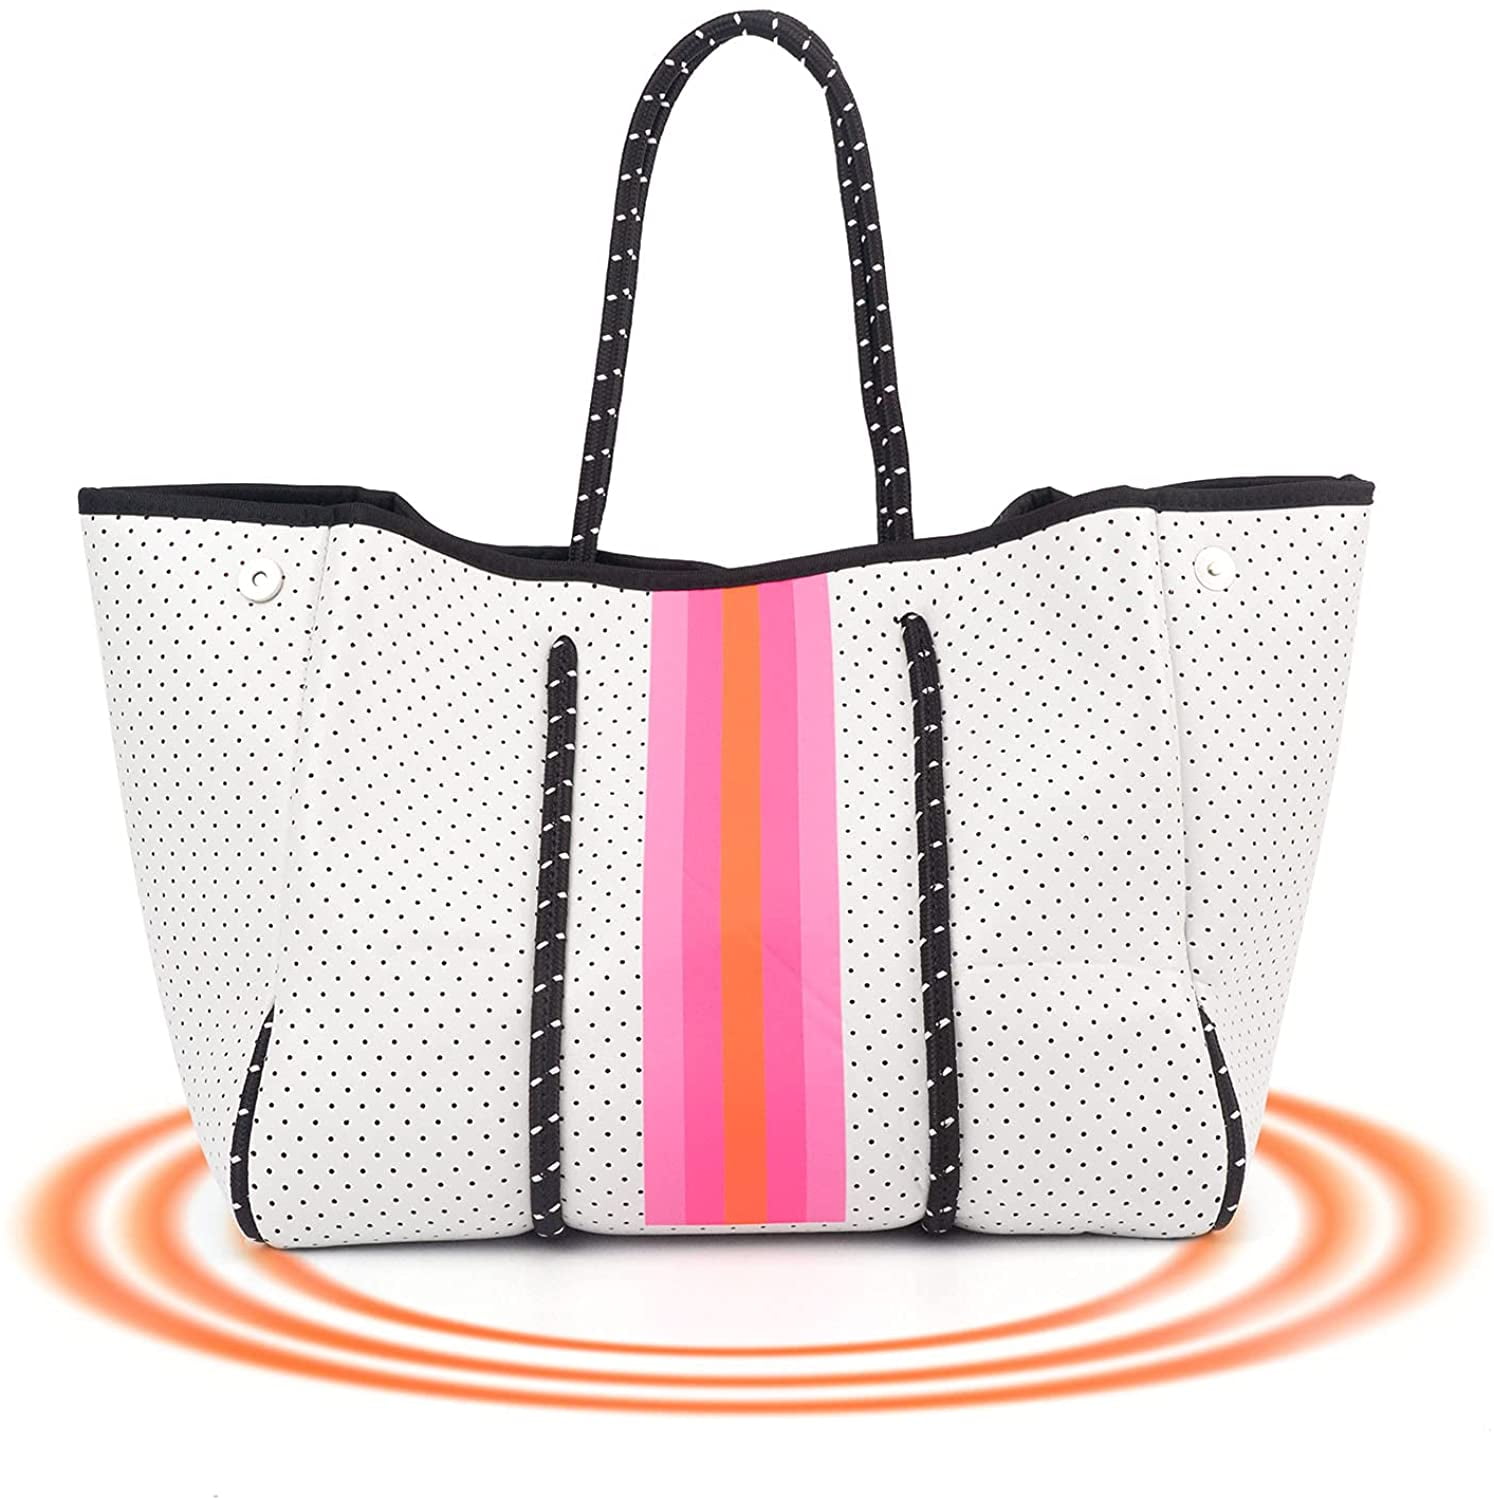  IBEE Tote bag for women,Neoprene bag,handbags for